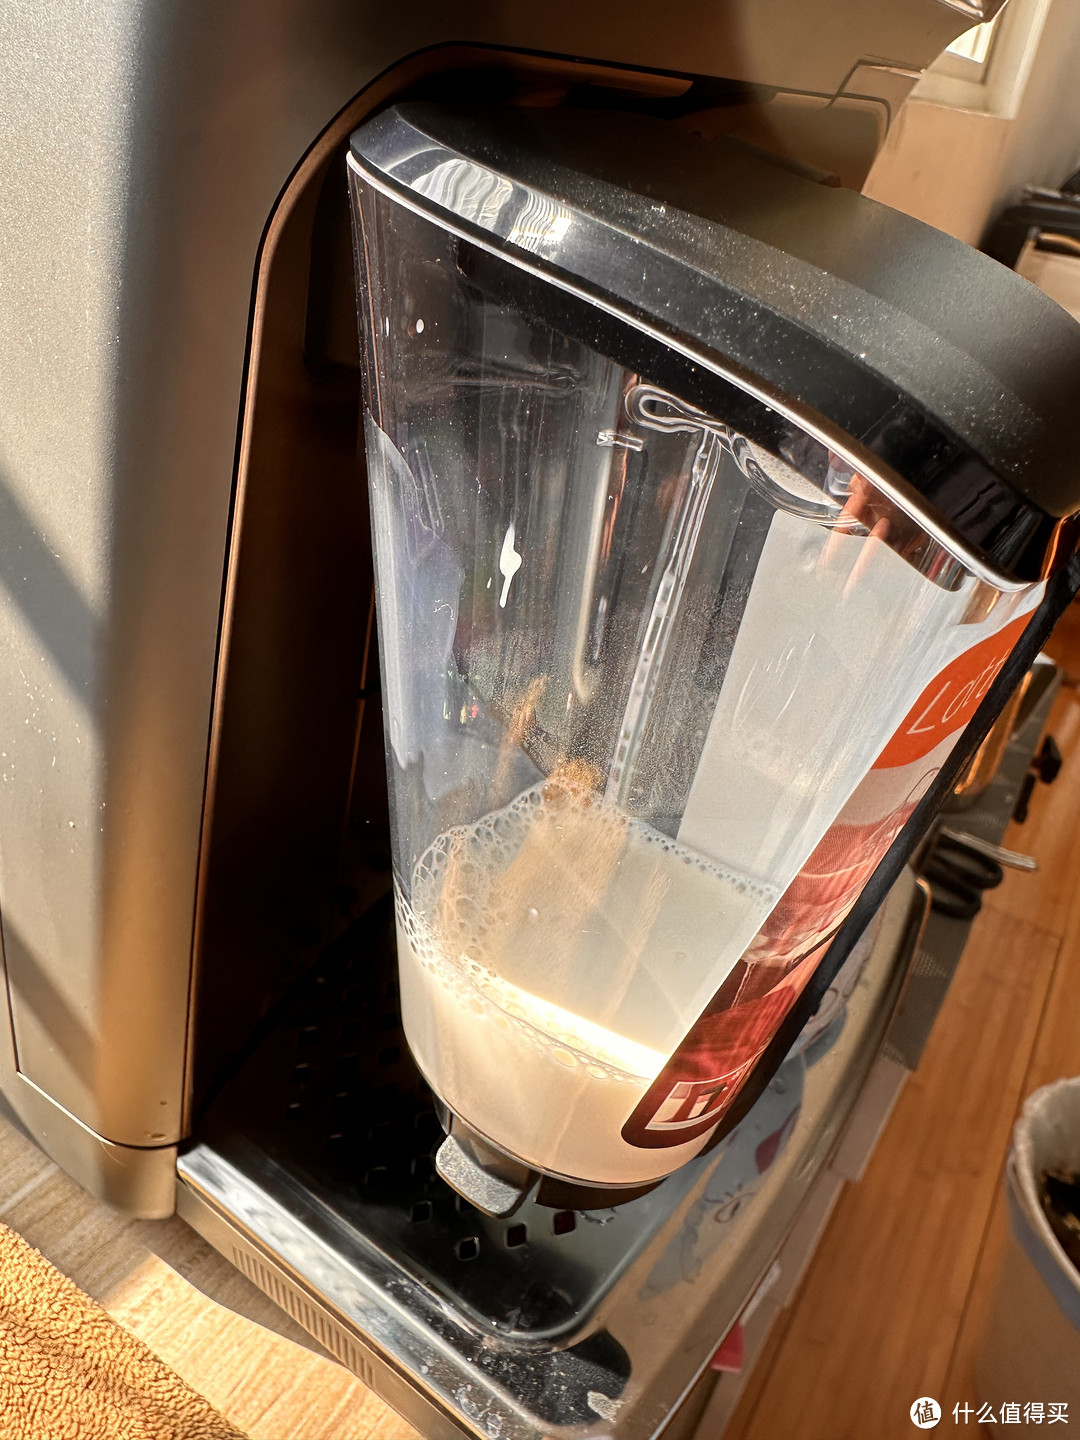 奶罐是直接卡在左边出水水龙头上面的，安装比较简单。